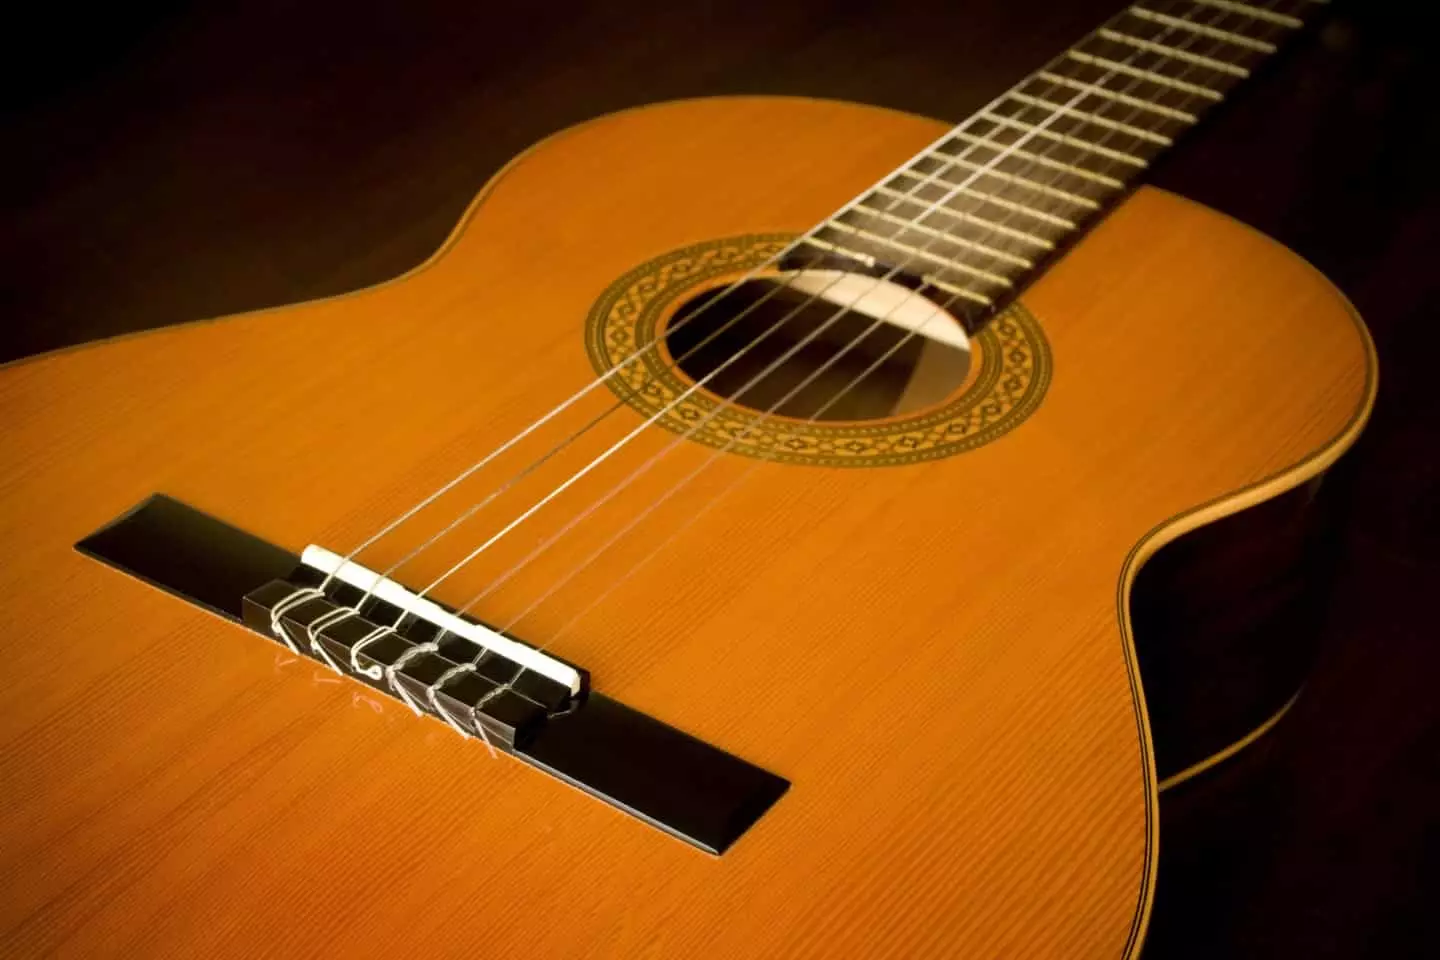 dây nylon cho guitar acoustic: làm thế nào để đặt và kéo? chuỗi tổng hợp là gì tốt hơn?